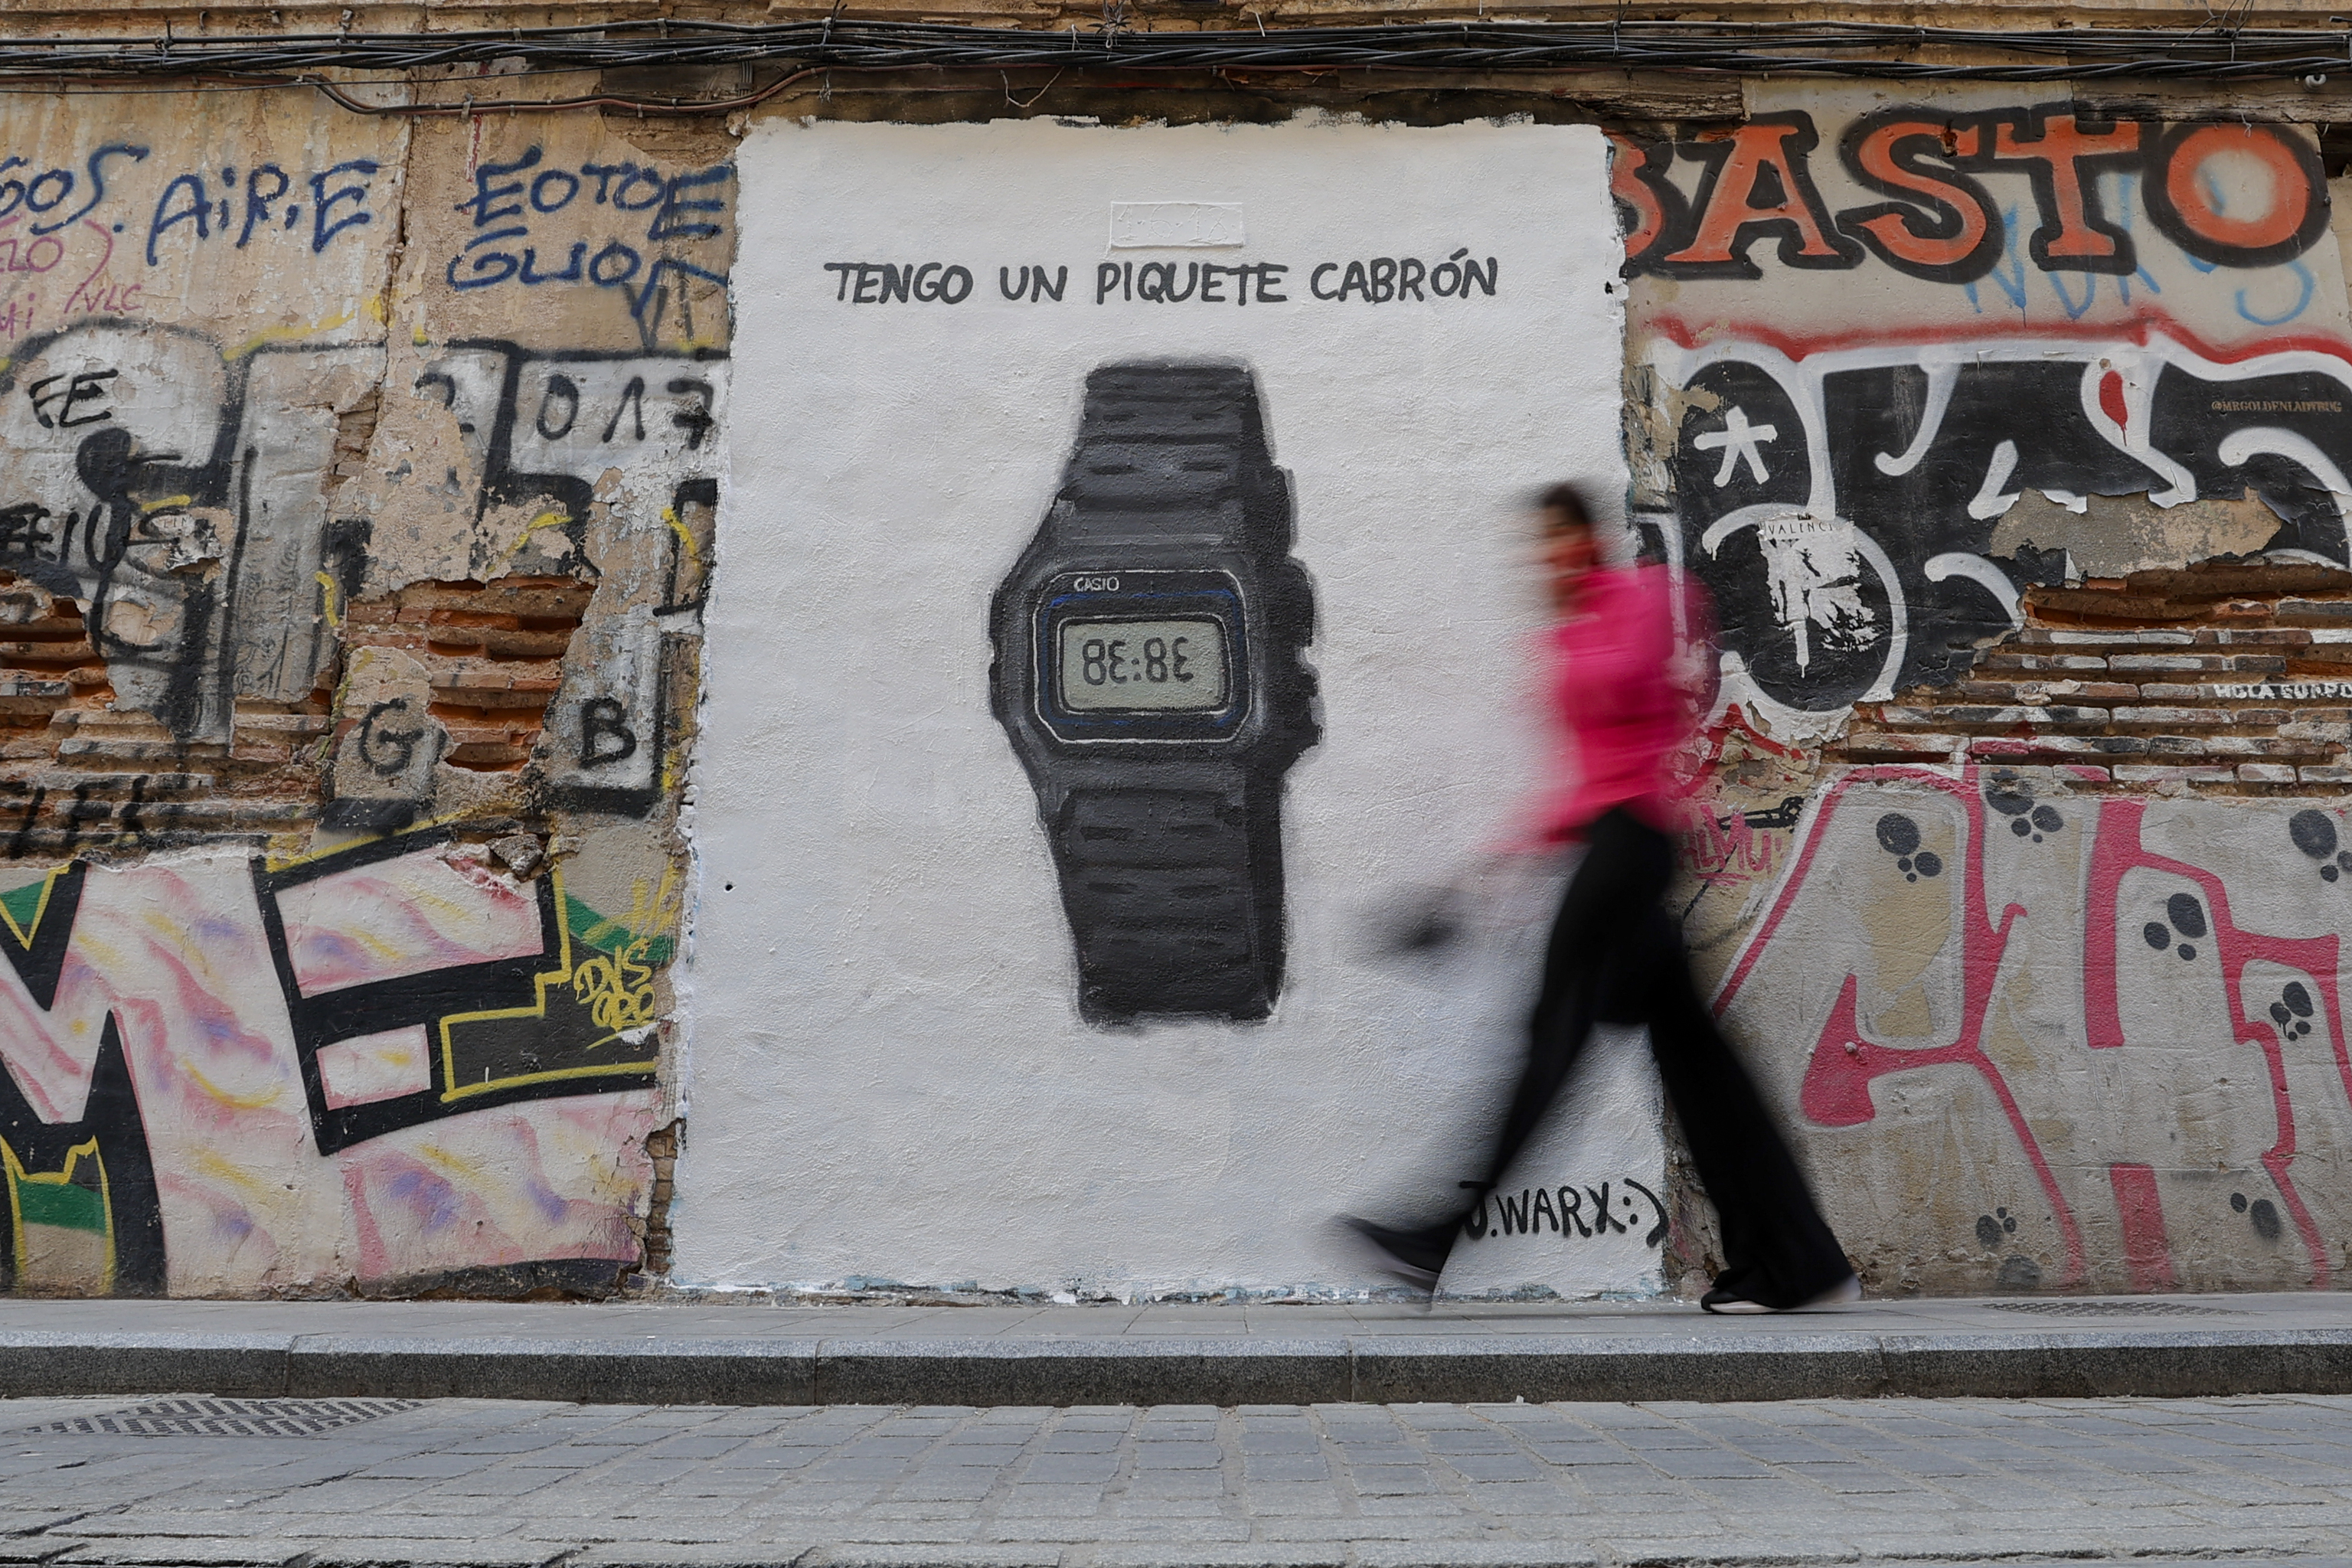 Una persona pasa ante un grafiti del grafitero J.Warx que alude al último éxito de la cantante colombiana Shakira.